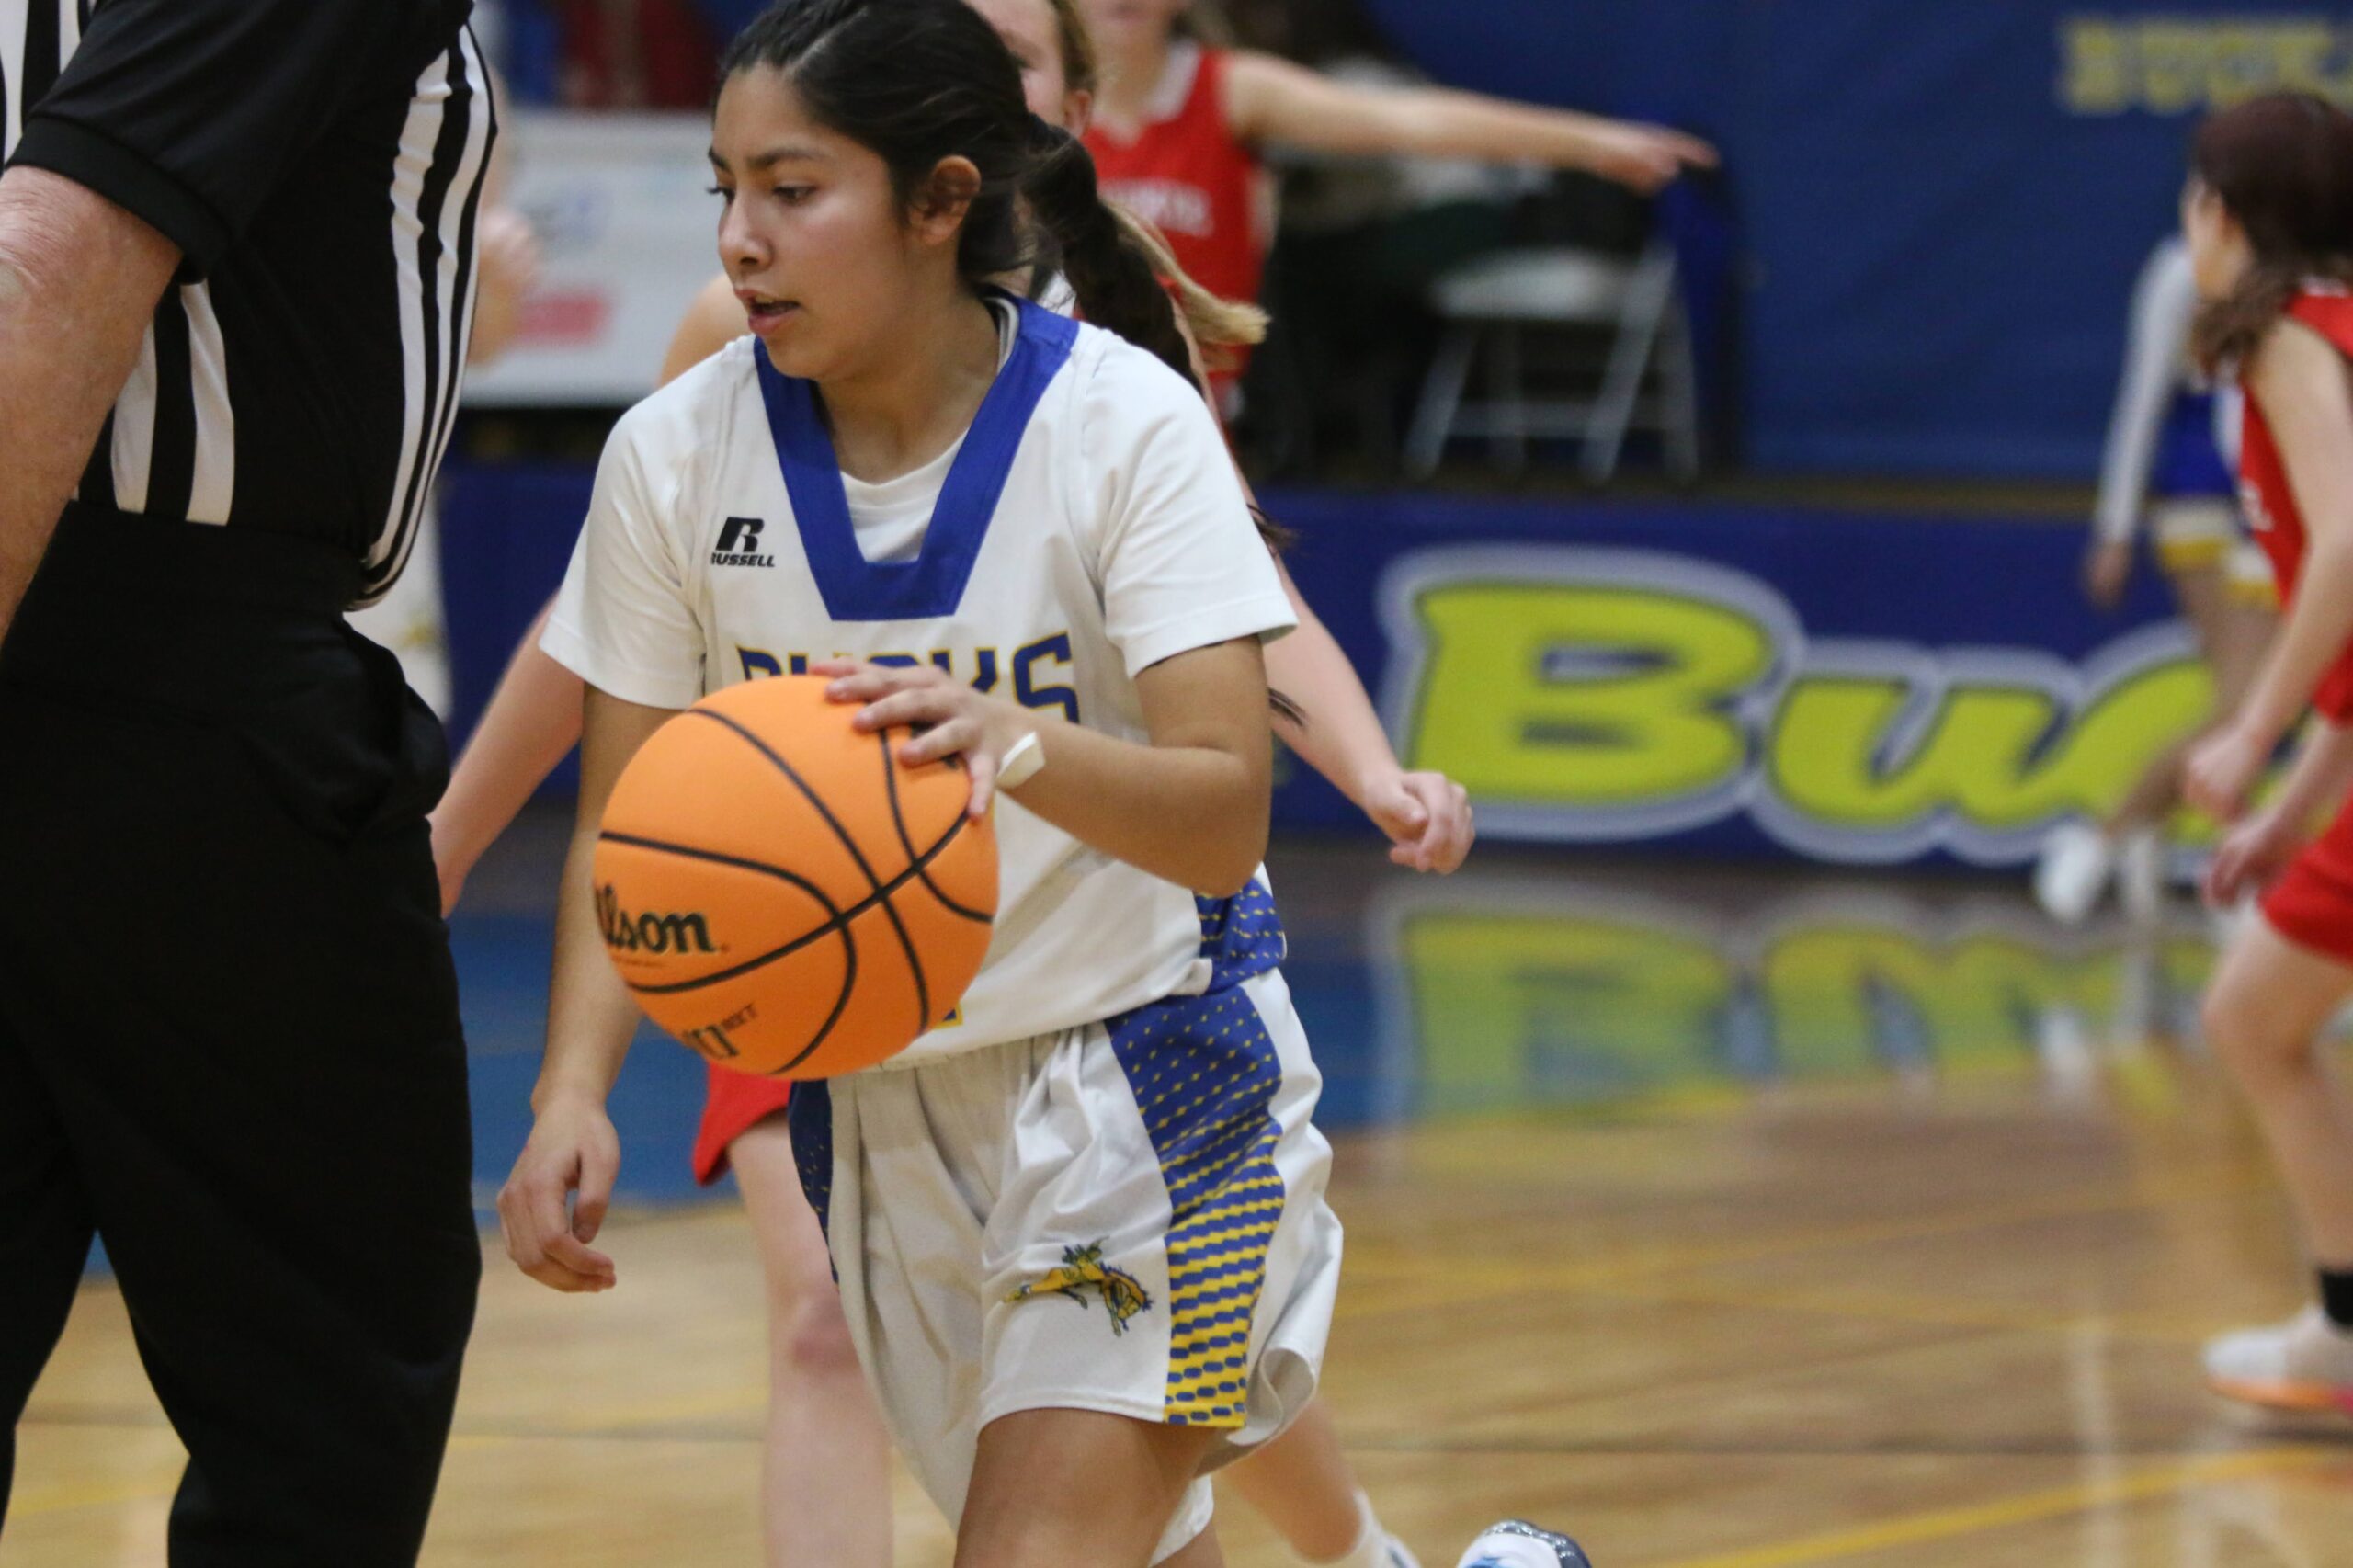 Girl’s JV basketball team returns to the court 